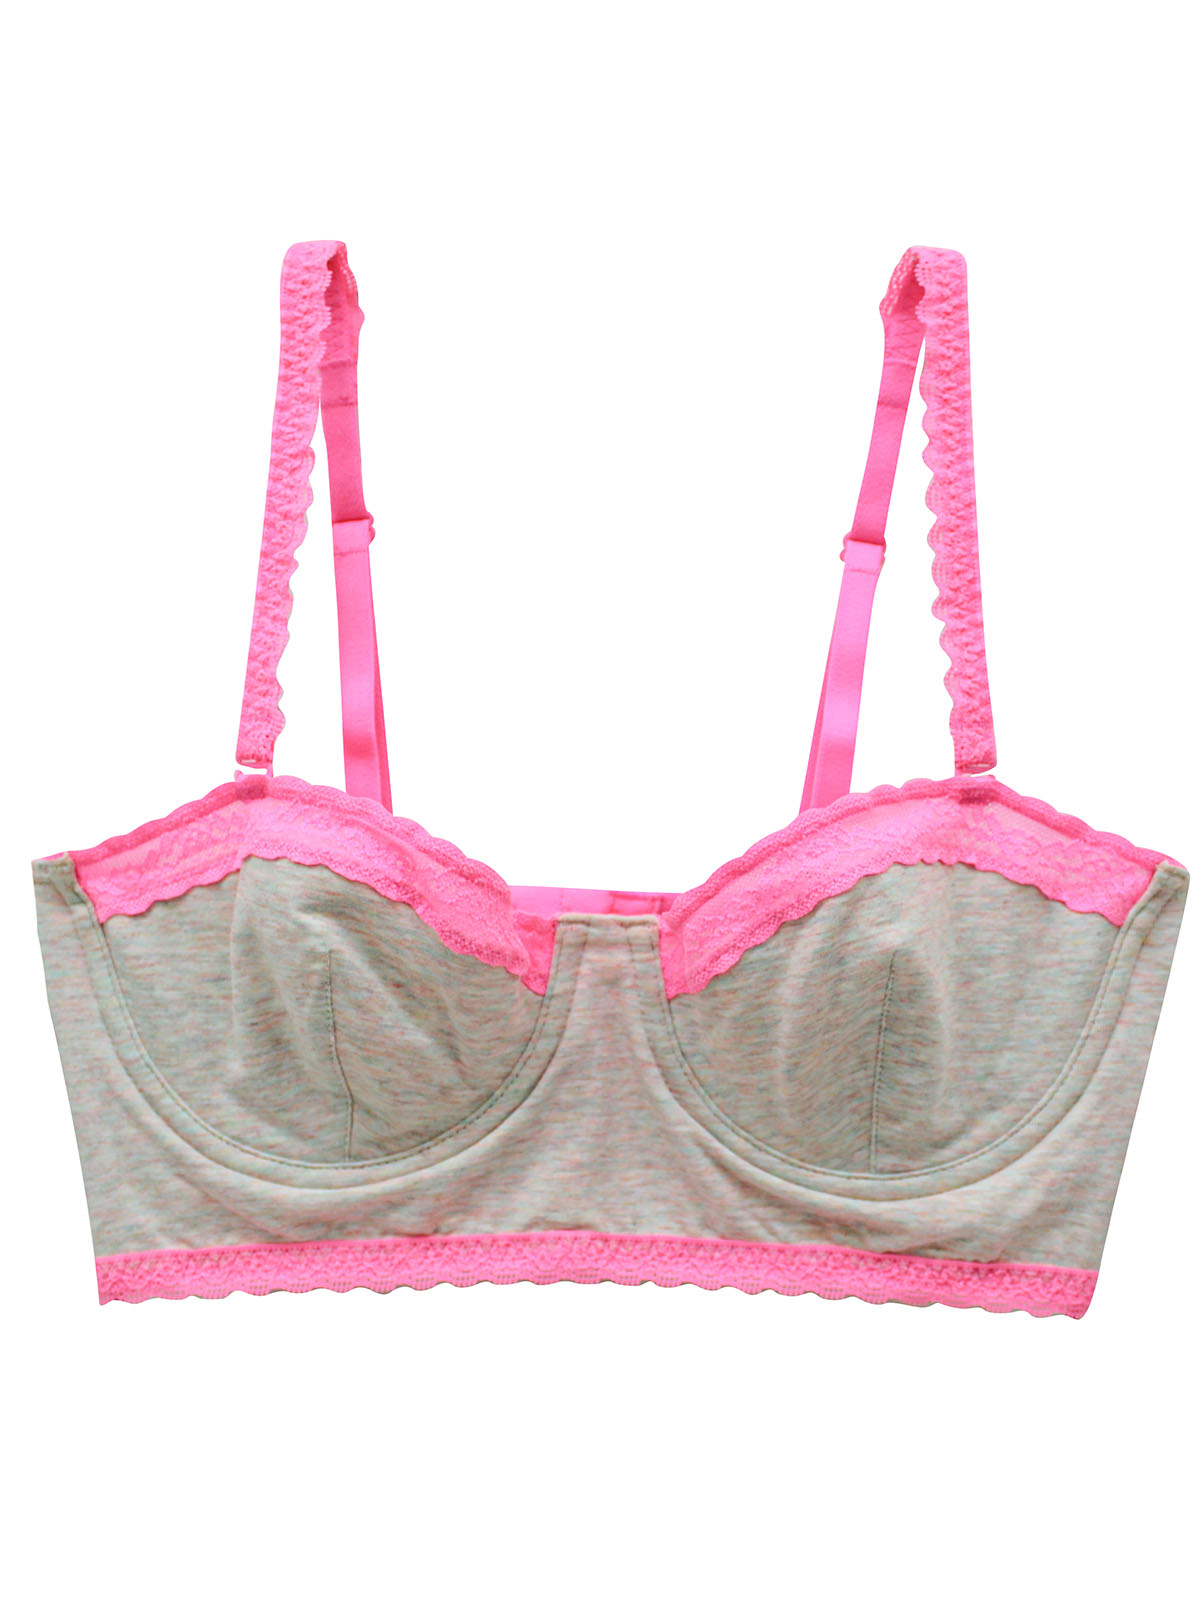 Victoria's Secret - - VS GREY PINK Contrast Lace Contour Cotton Adjustable  Straps Longline Bra - Size